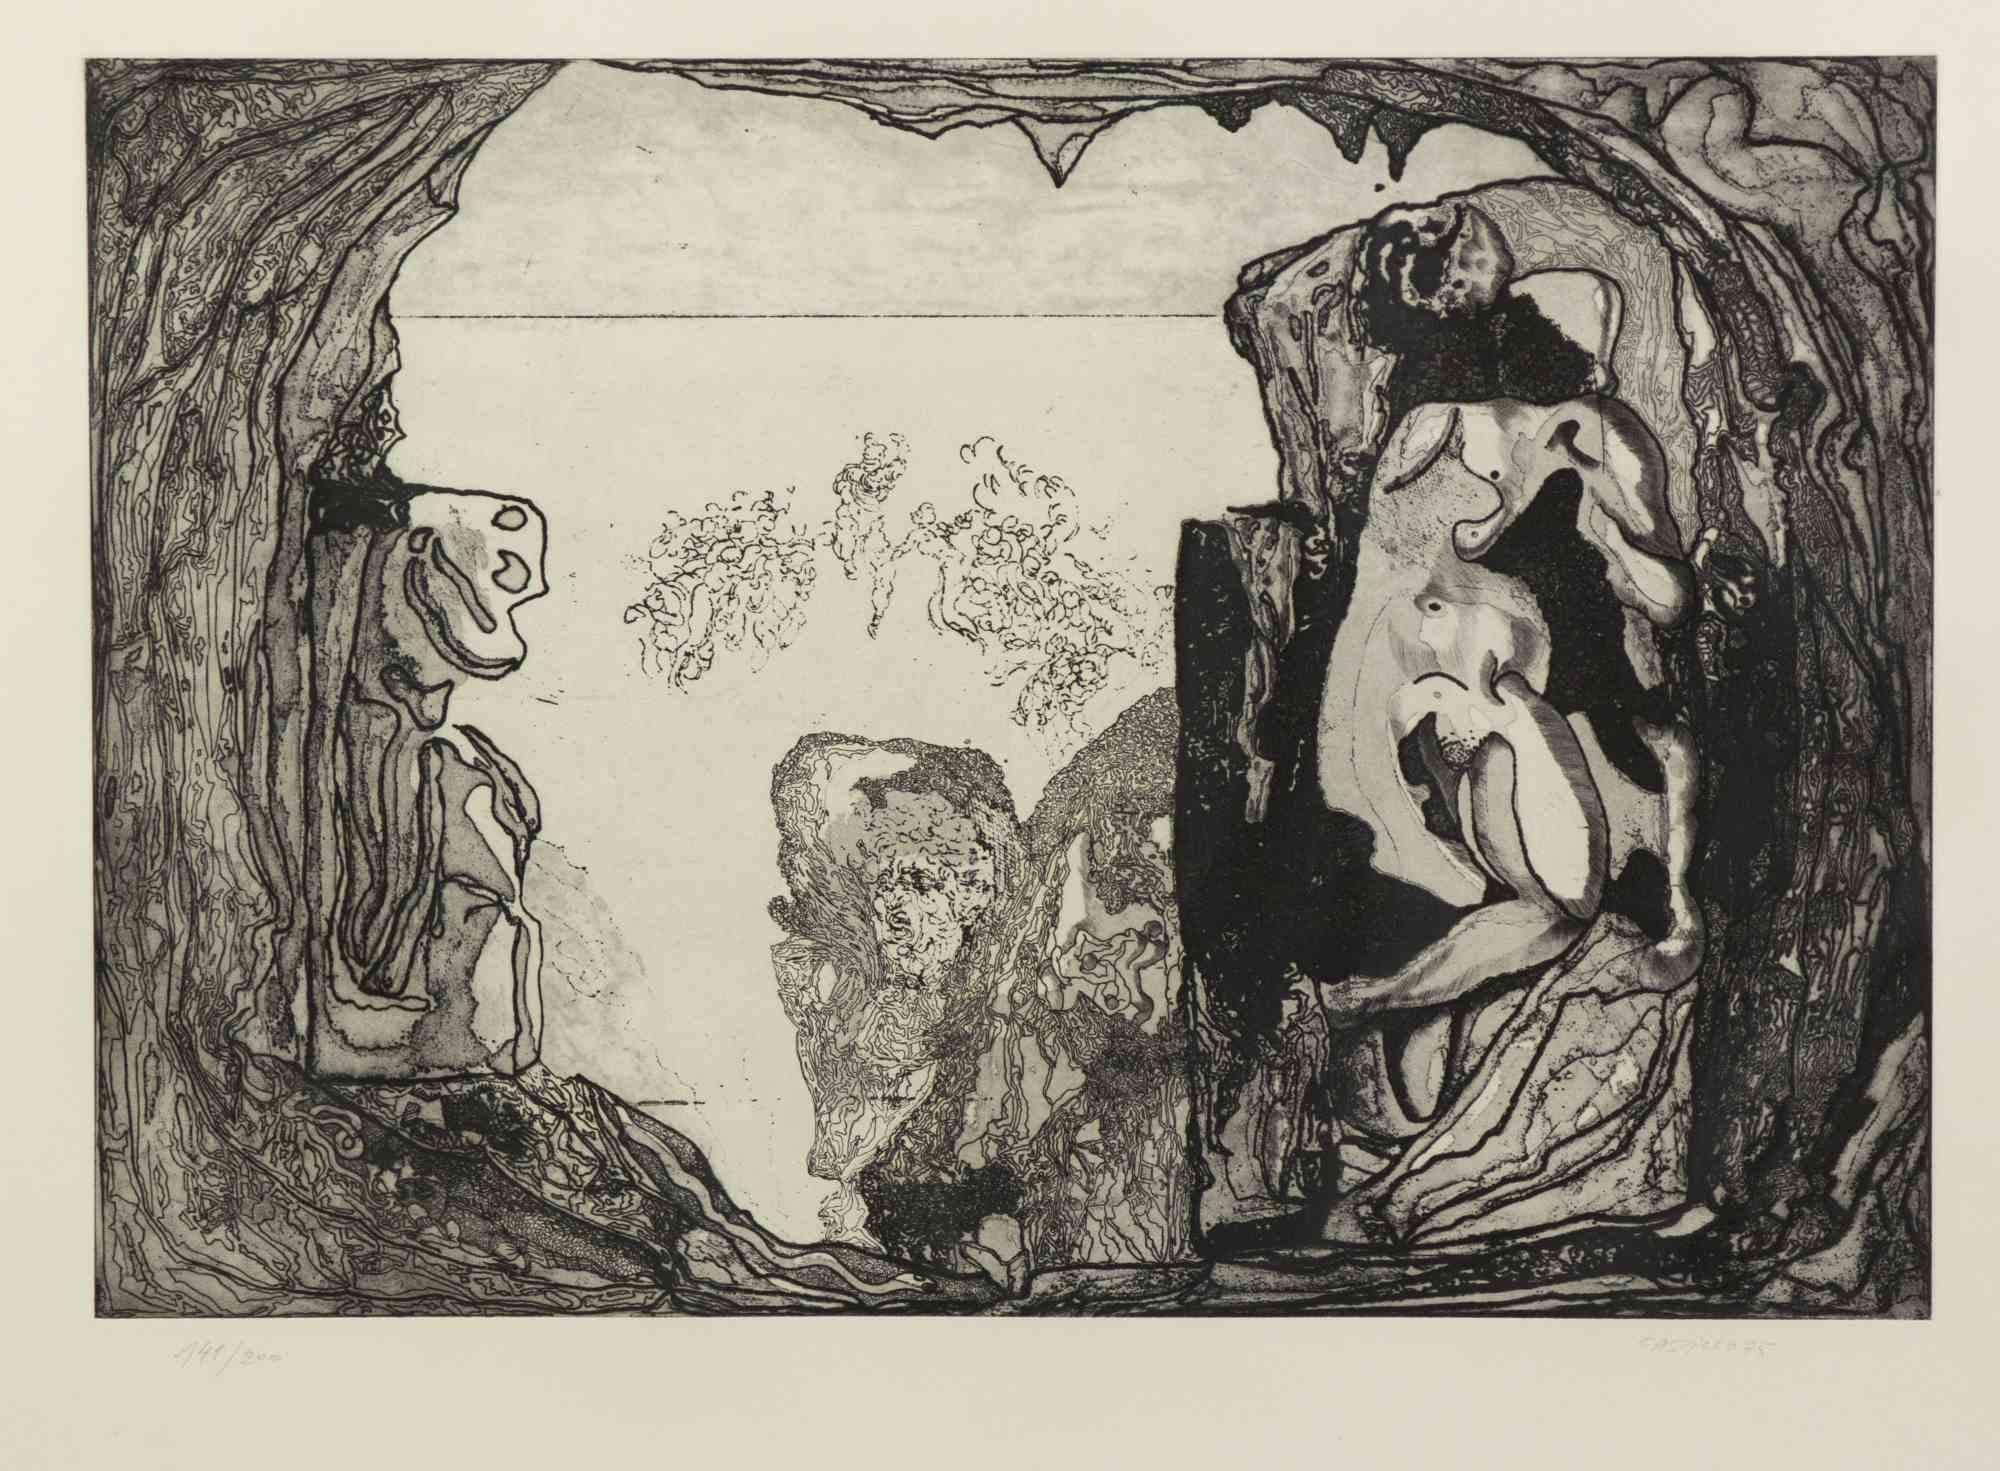 Hommage an Michelangelo ist ein Original-Kunstwerk von Jorge Castillo aus dem Jahr 1975.

Schwarz-Weiß-Radierung.

Am unteren Rand handsigniert und datiert.

Links unten nummeriert. Ausgabe 141/200.